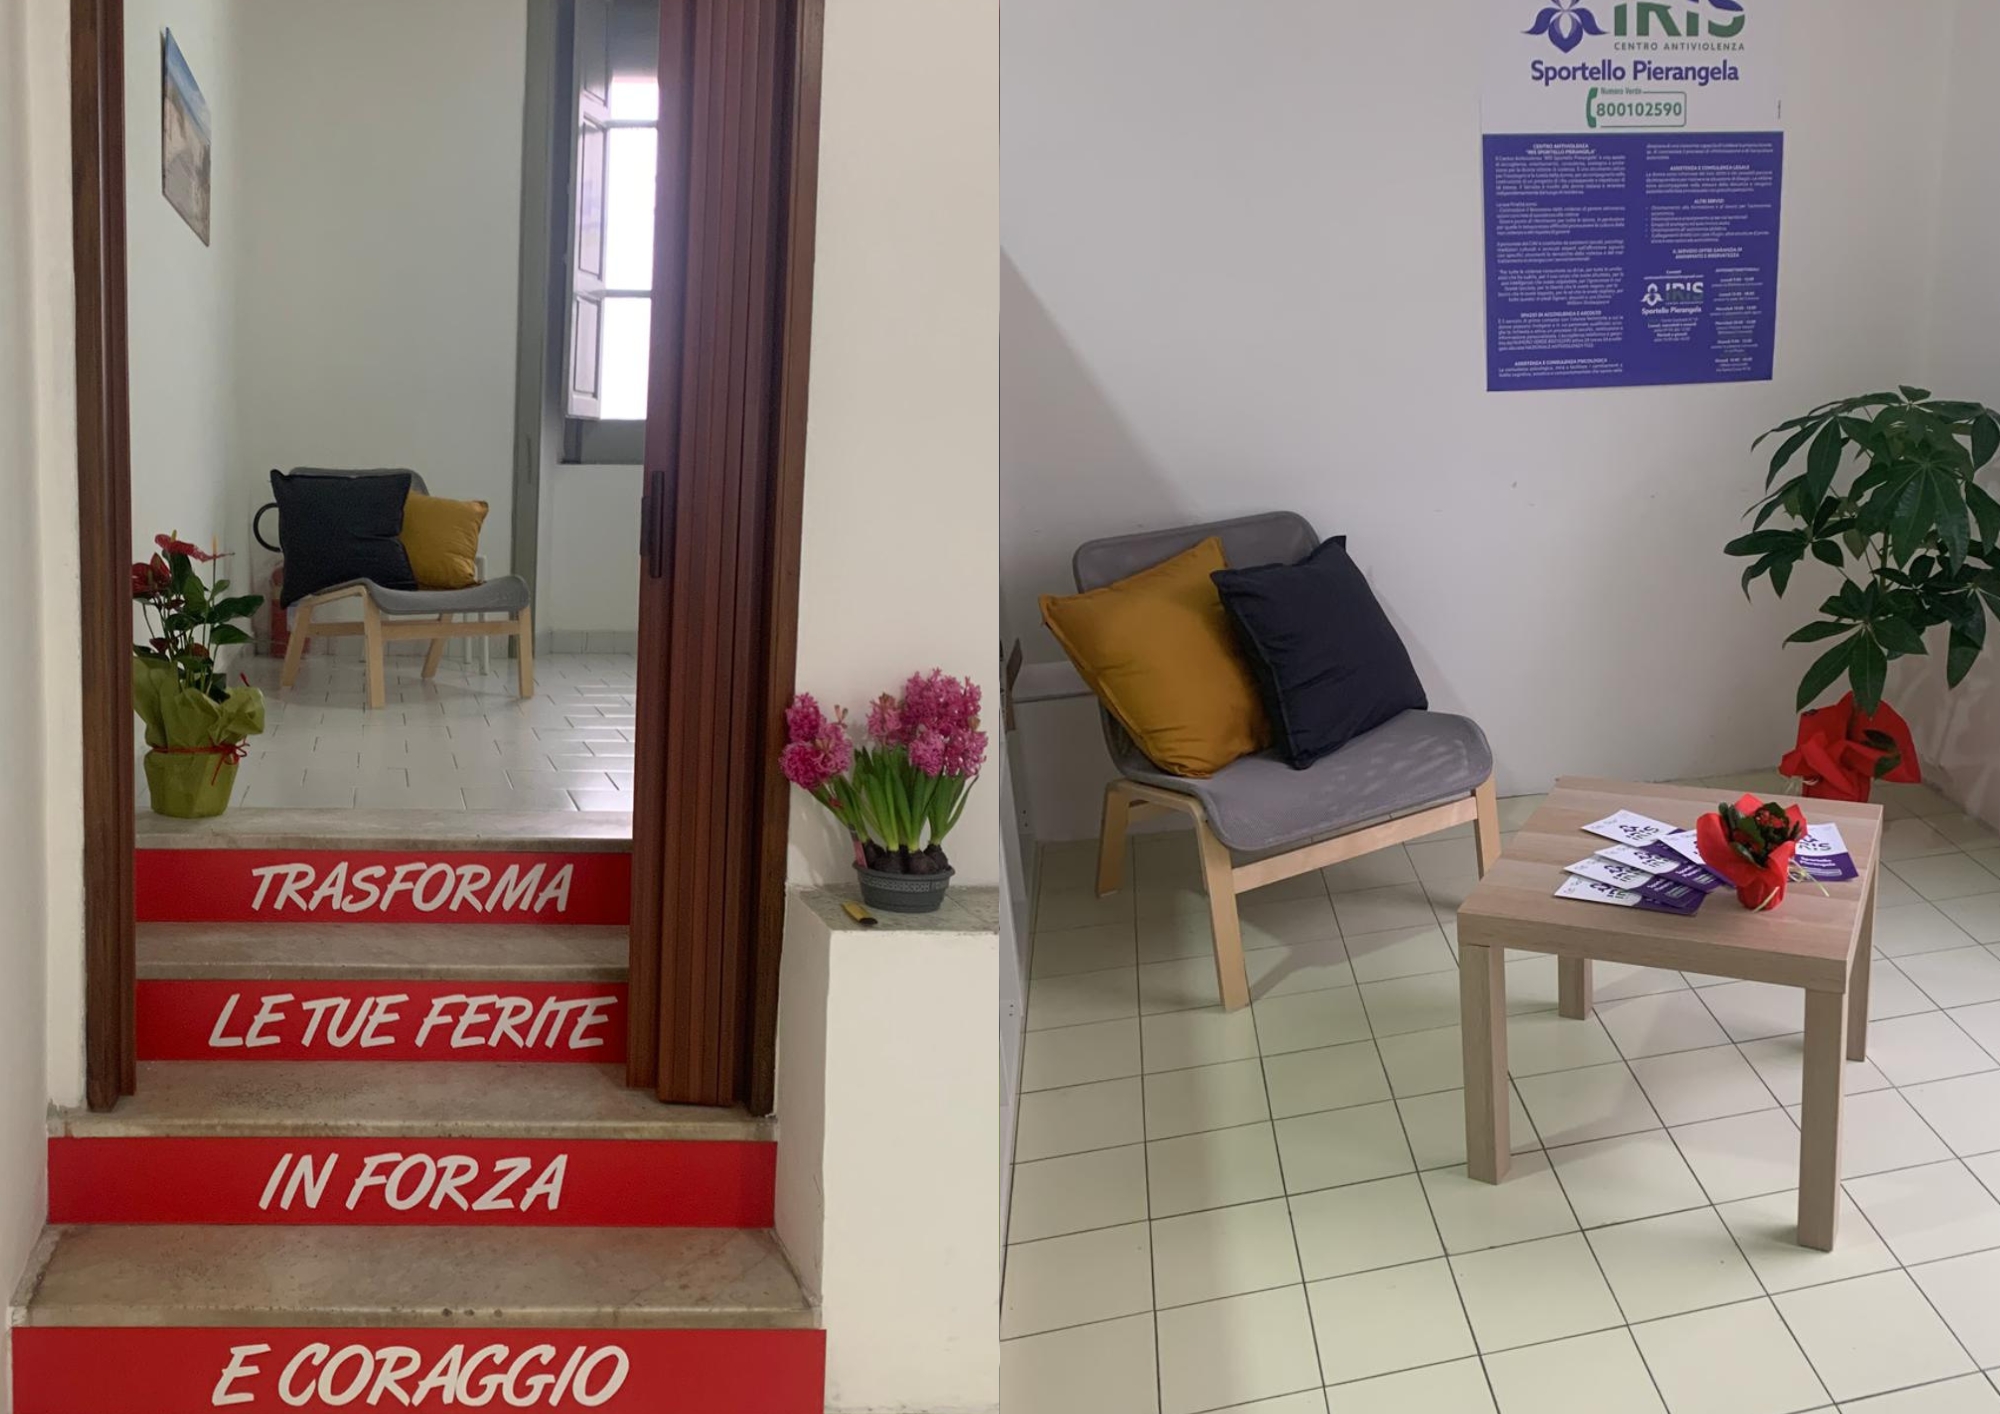 Sapri, inaugurato il nuovo Centro Antiviolenza Iris-sportello Pierangela